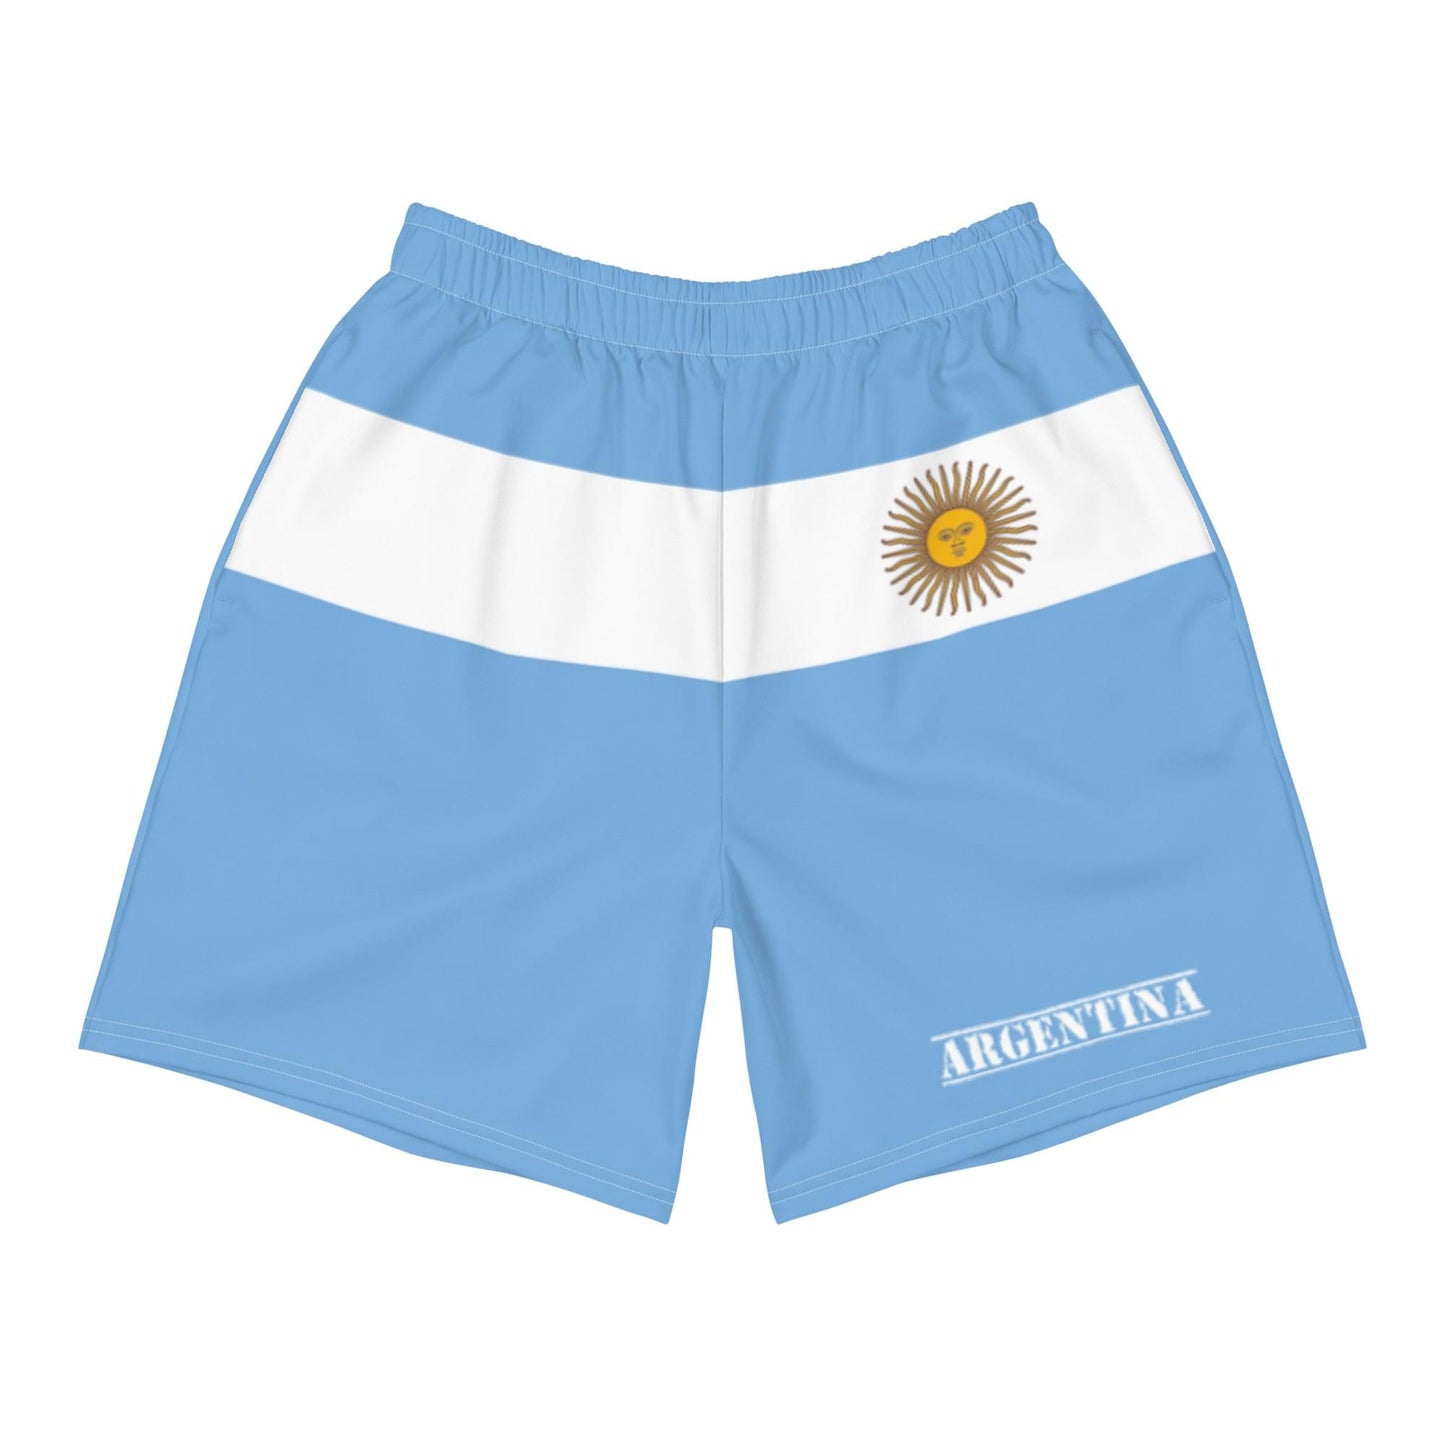 Shorts argentinos para hombre / Estilo de ropa argentina / Poliéster reciclado